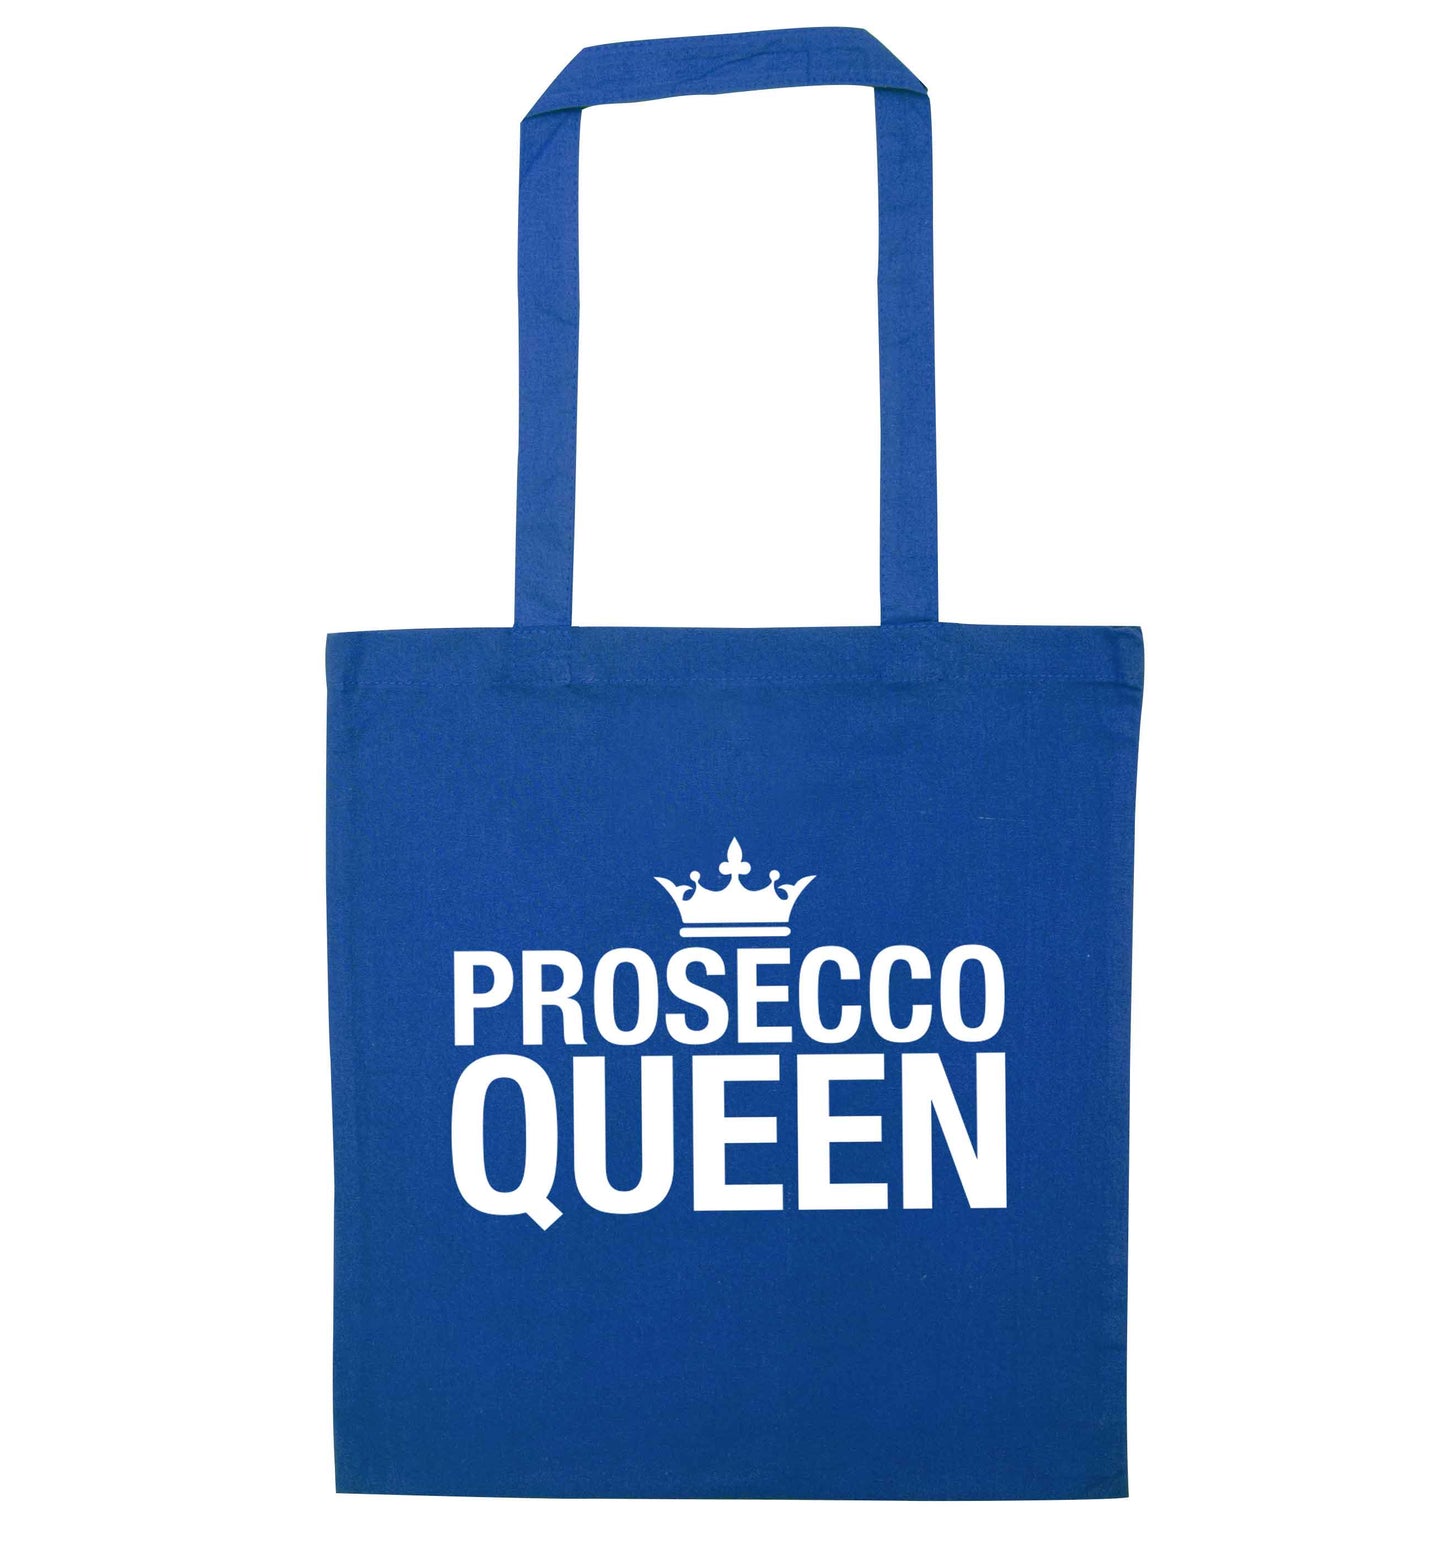 Prosecco queen blue tote bag